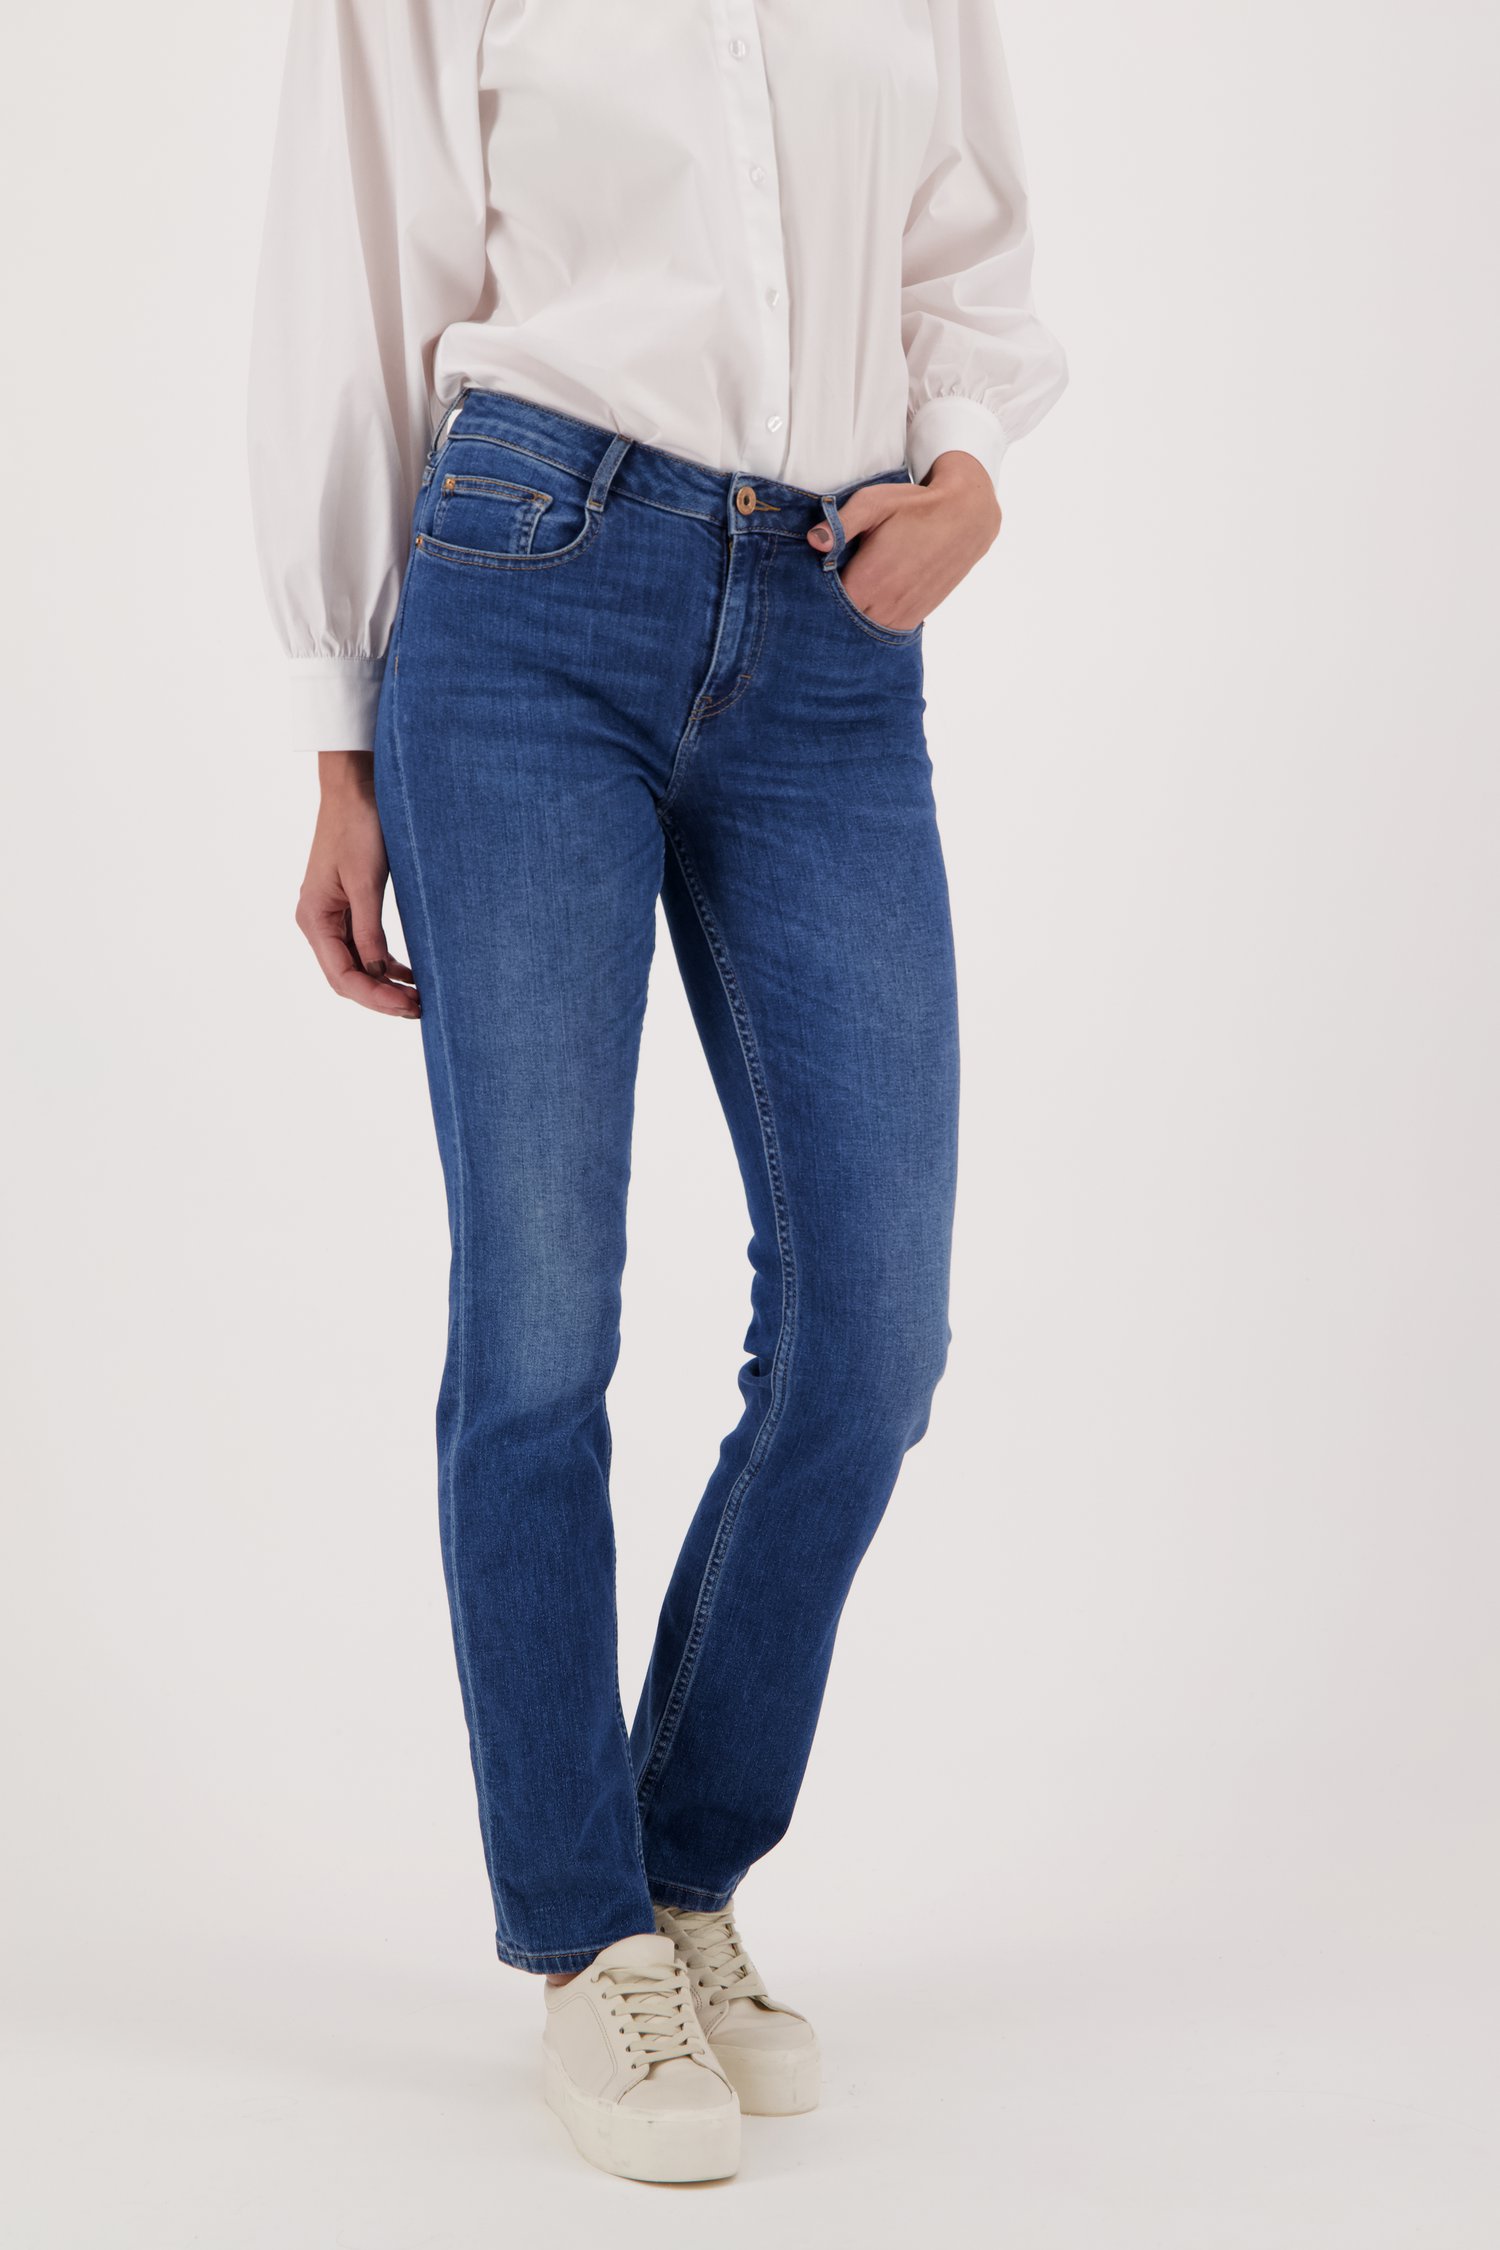 Kritiek kapperszaak Intiem Blauwe jeans - Tammy - straight fit - L32 van Liberty Island Denim |  5776954 | e5